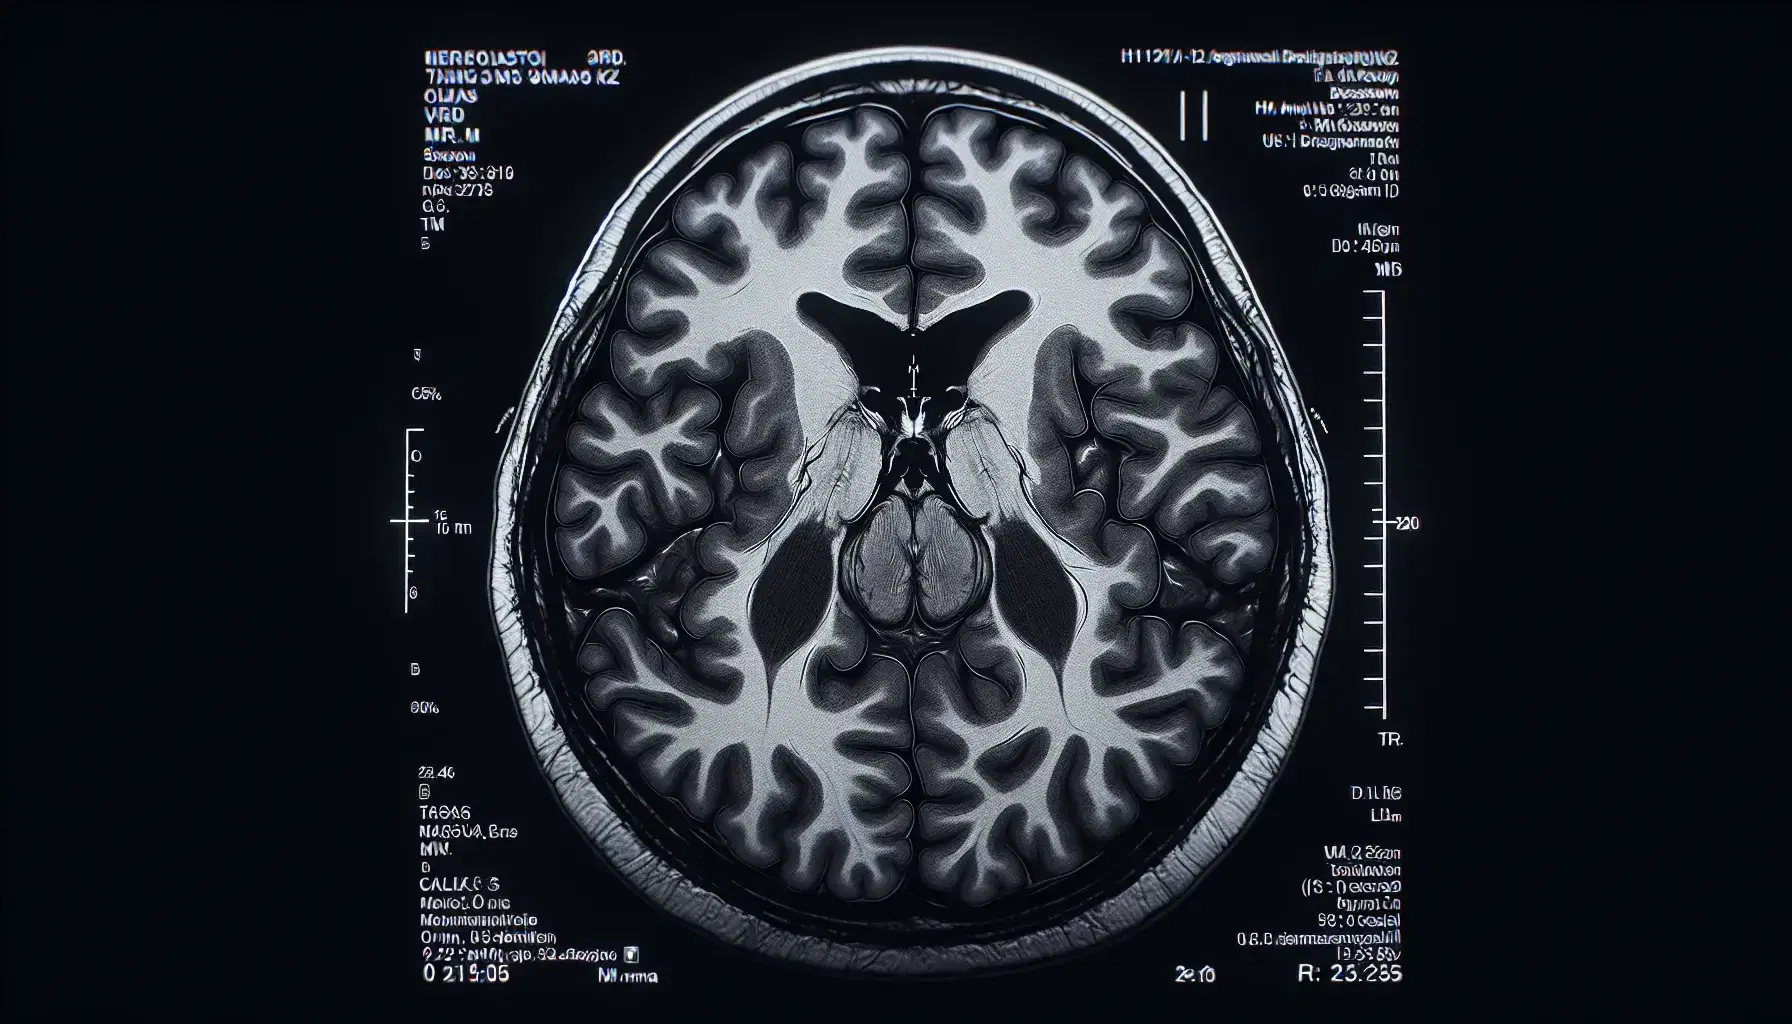 Escaneo de resonancia magnética del cerebro humano mostrando sección transversal con diferencias de tejido y cavidades ventriculares, sin texto ni símbolos.